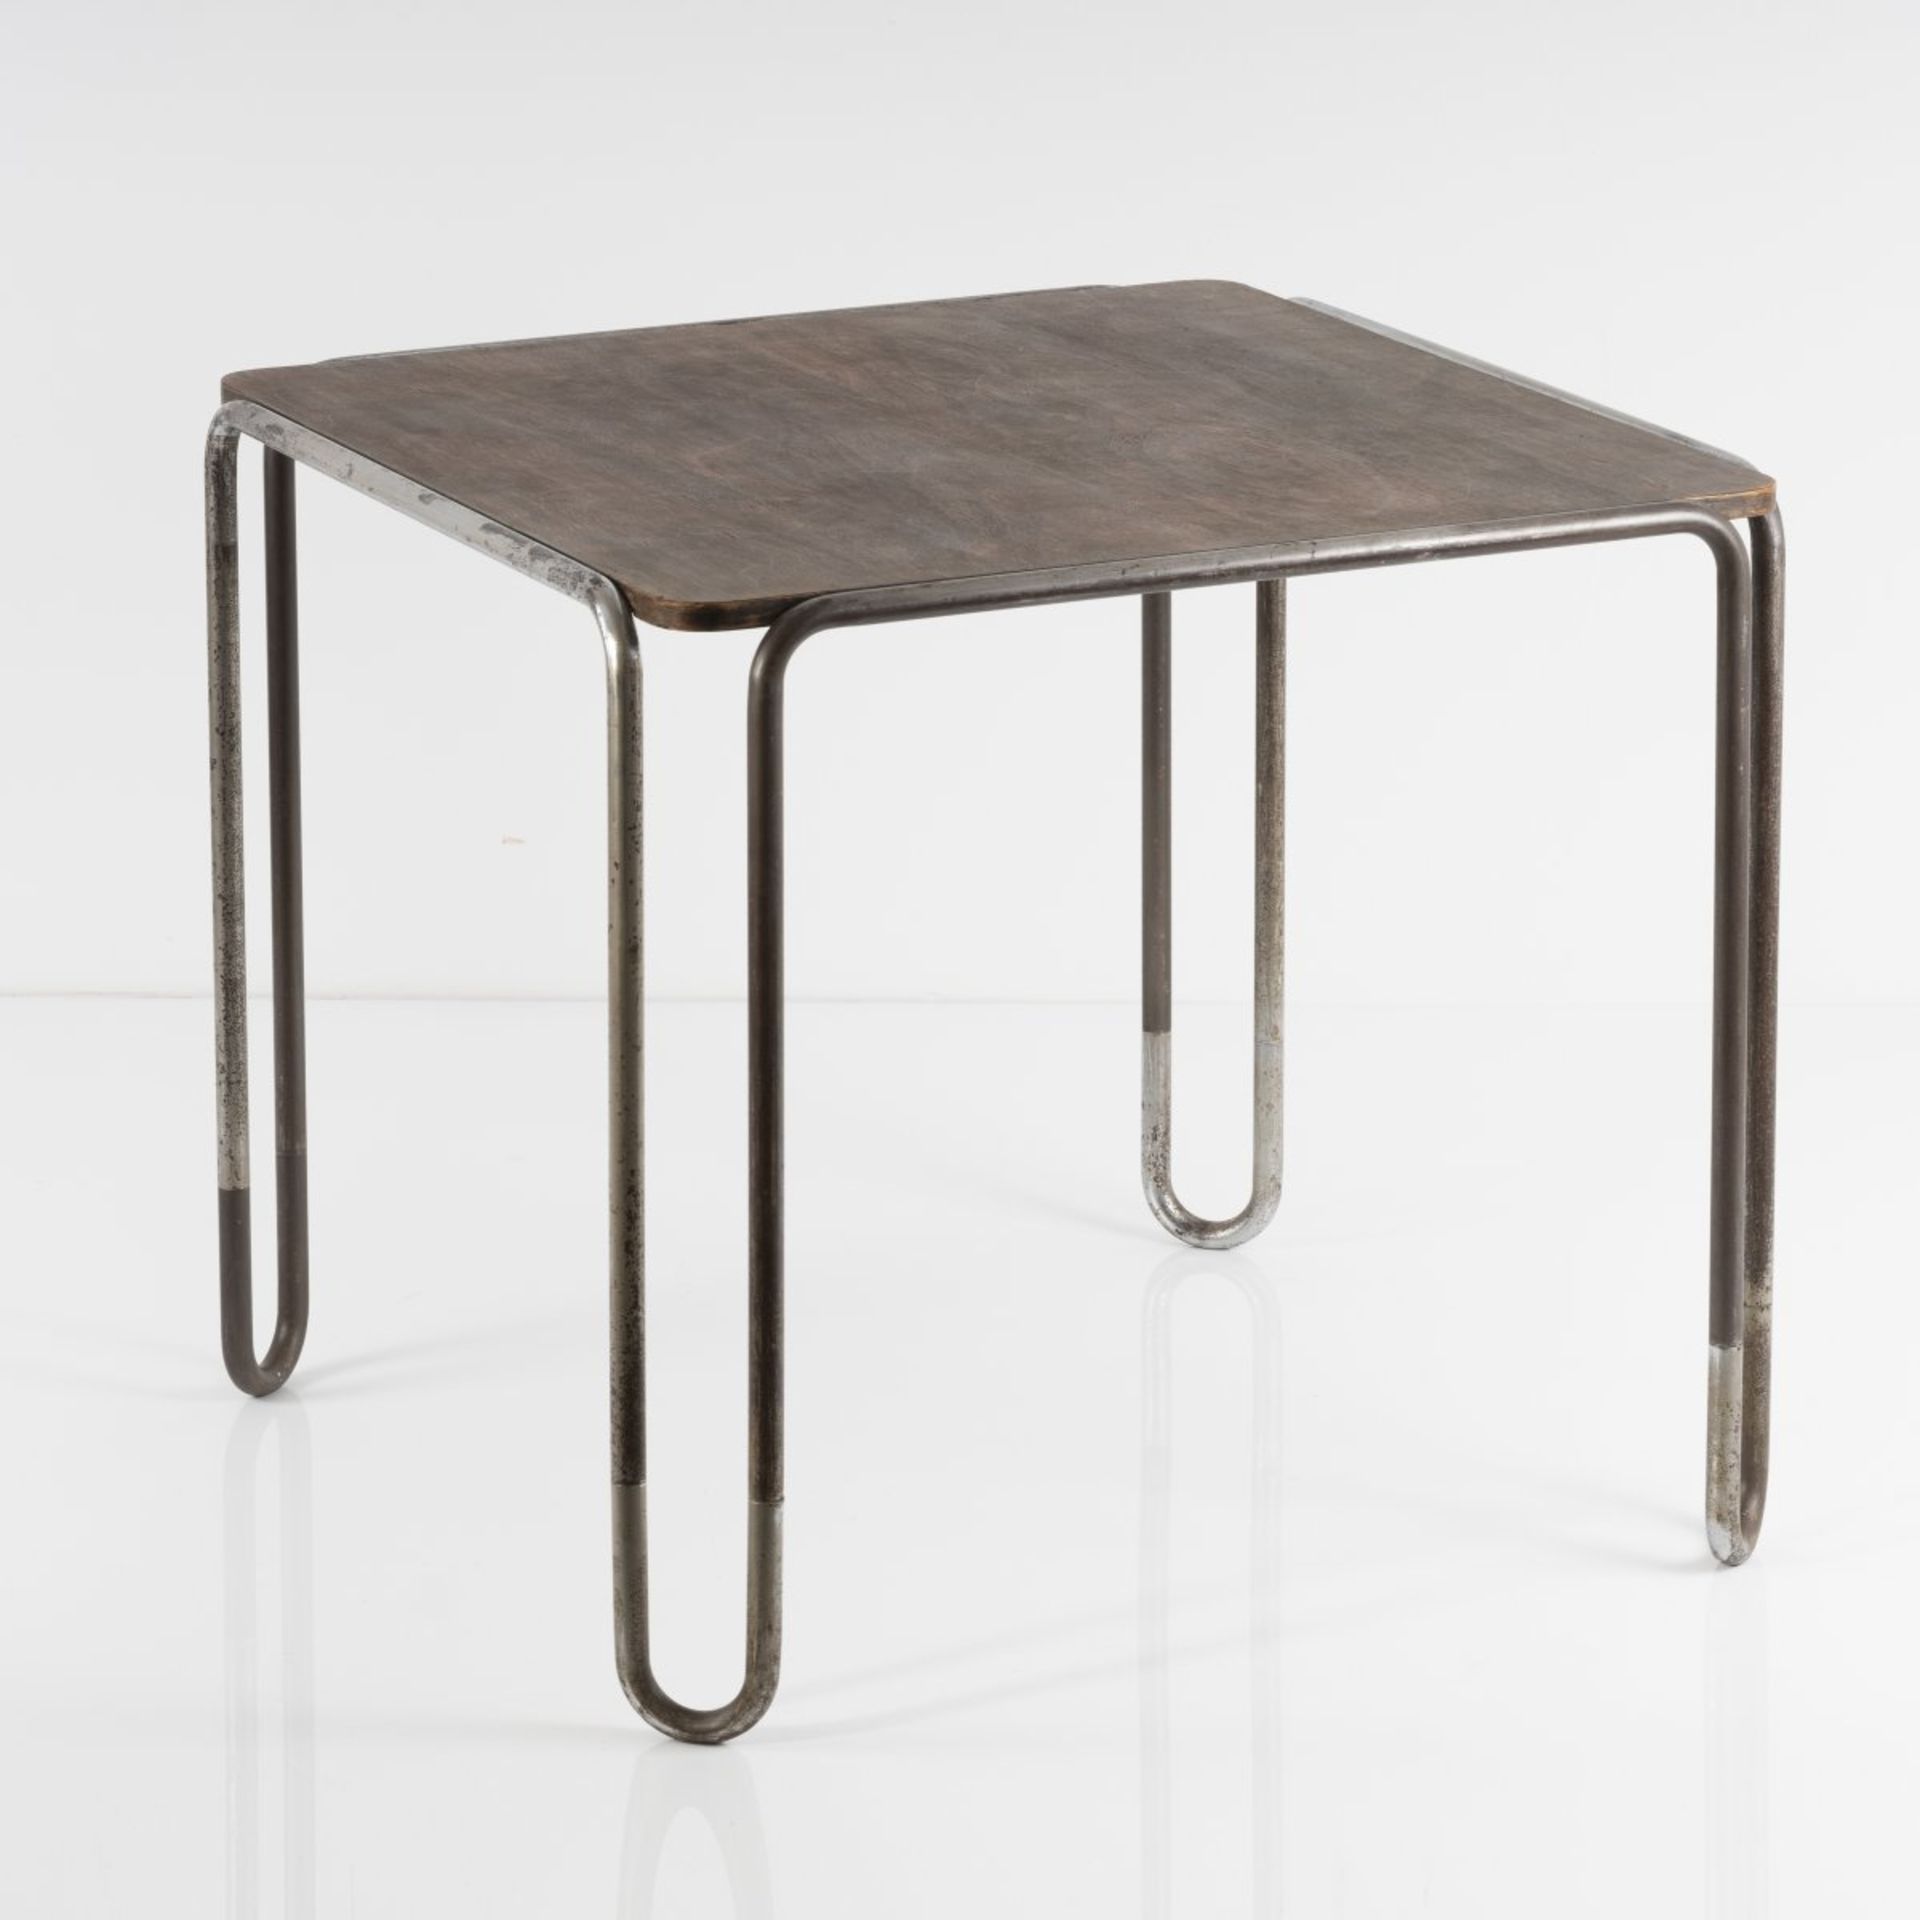 Marcel Breuer , Tisch 'B 10', 1927 Tisch 'B 10', 1927 H. 67,5 x 74 x 74,5 cm; Rohr Ø 2 cm.Thonet, - Bild 3 aus 7